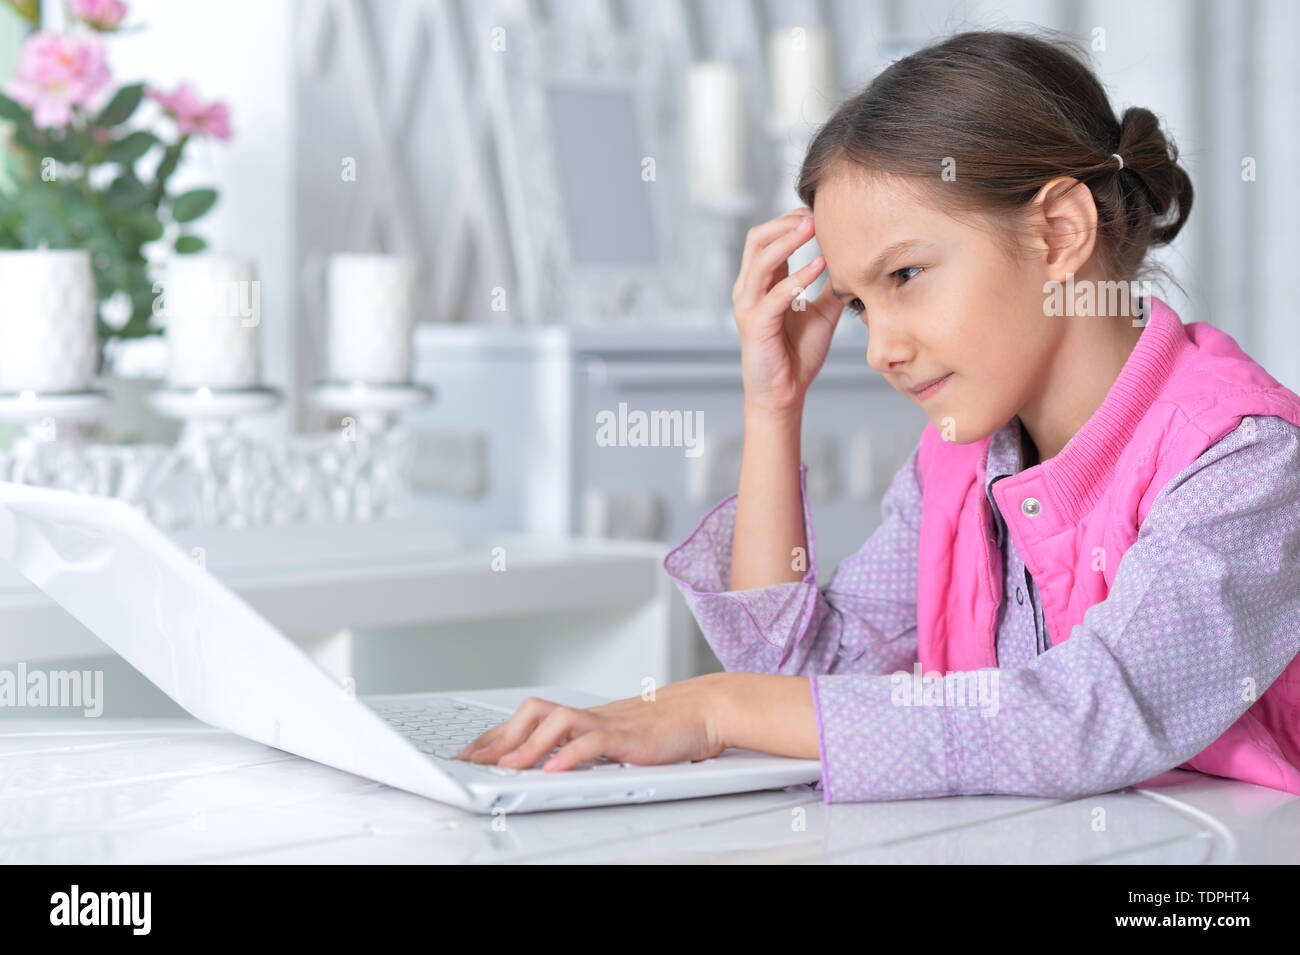 Retrato de cute little girl utilizando modernas laptop Foto de stock